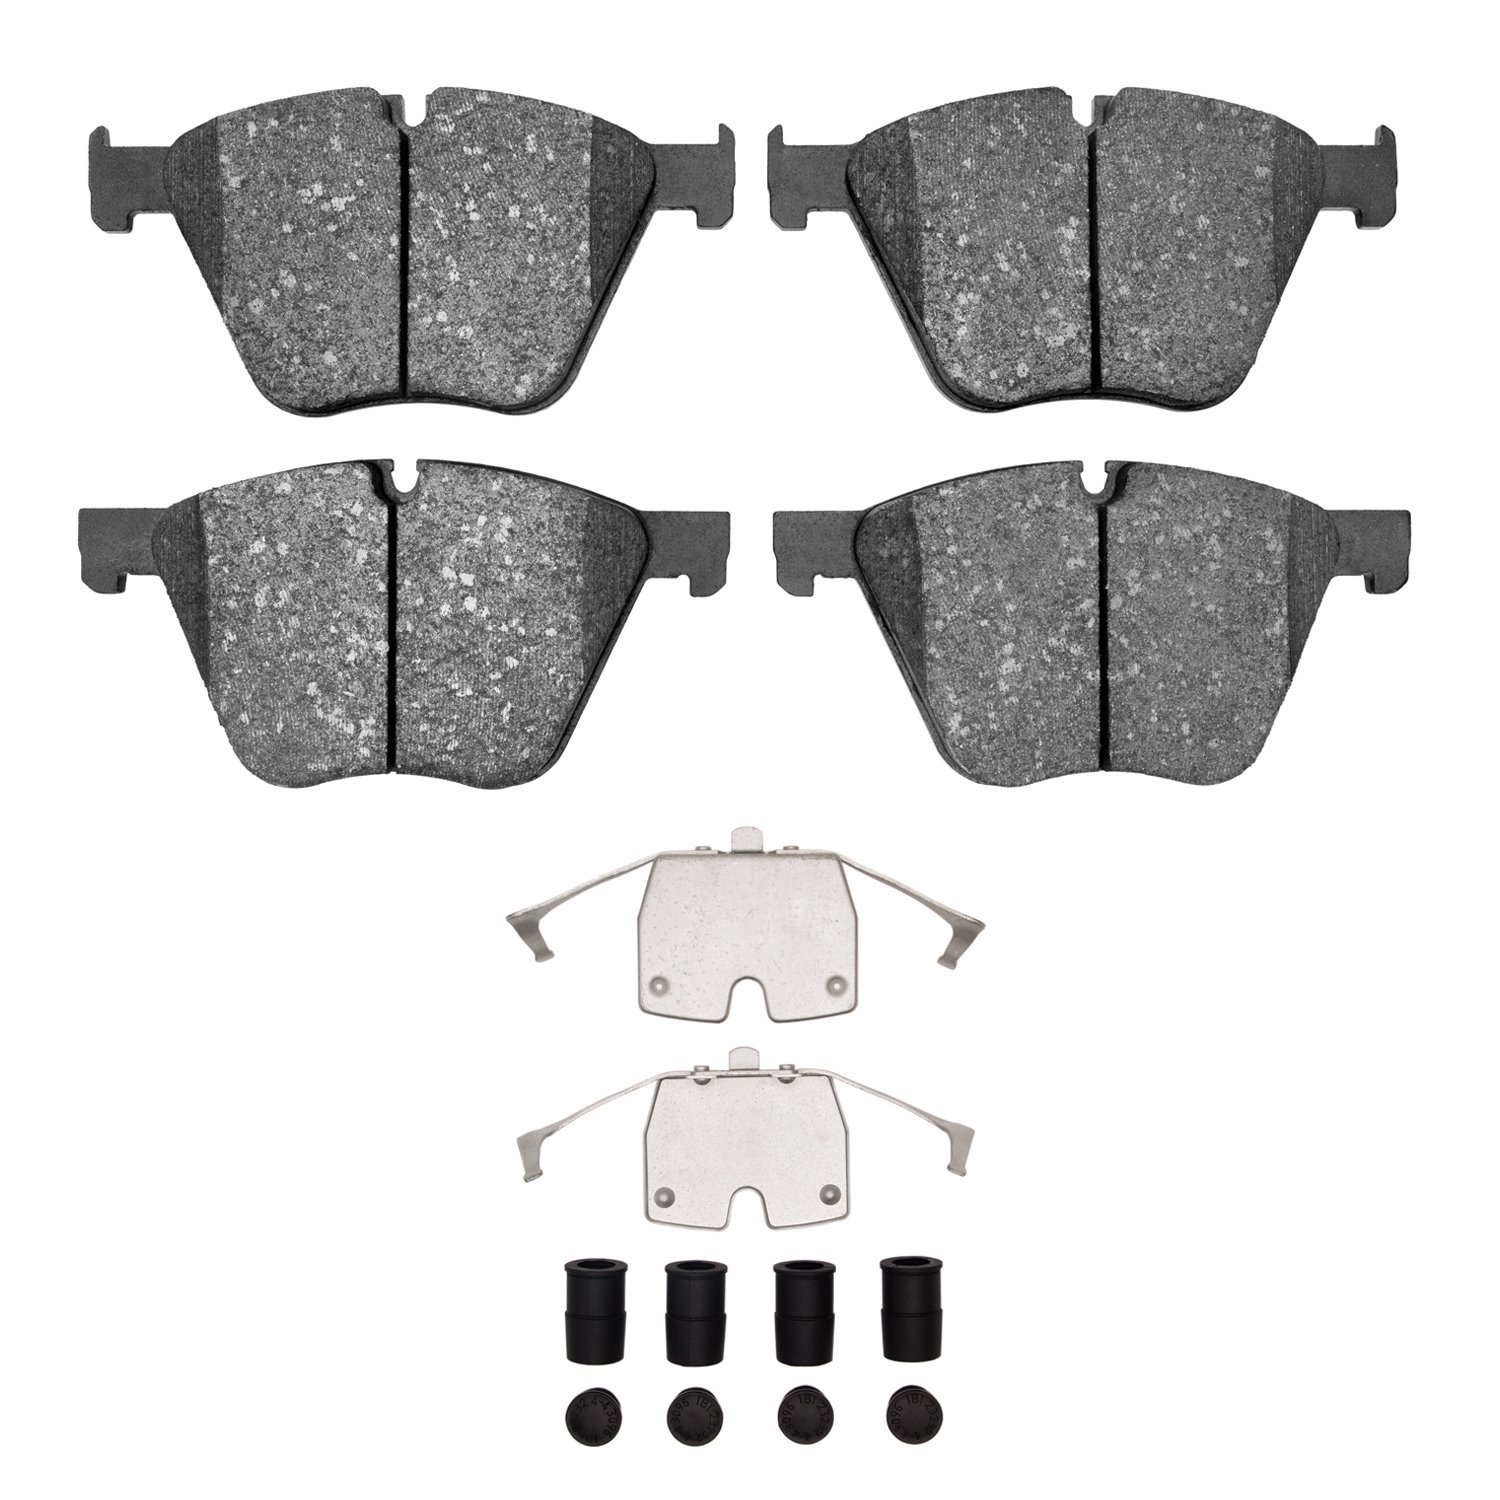 1551-1443-01 5000 Advanced Low-Metallic Brake Pads & Hardware Kit, 2010-2019 BMW, Position: Front